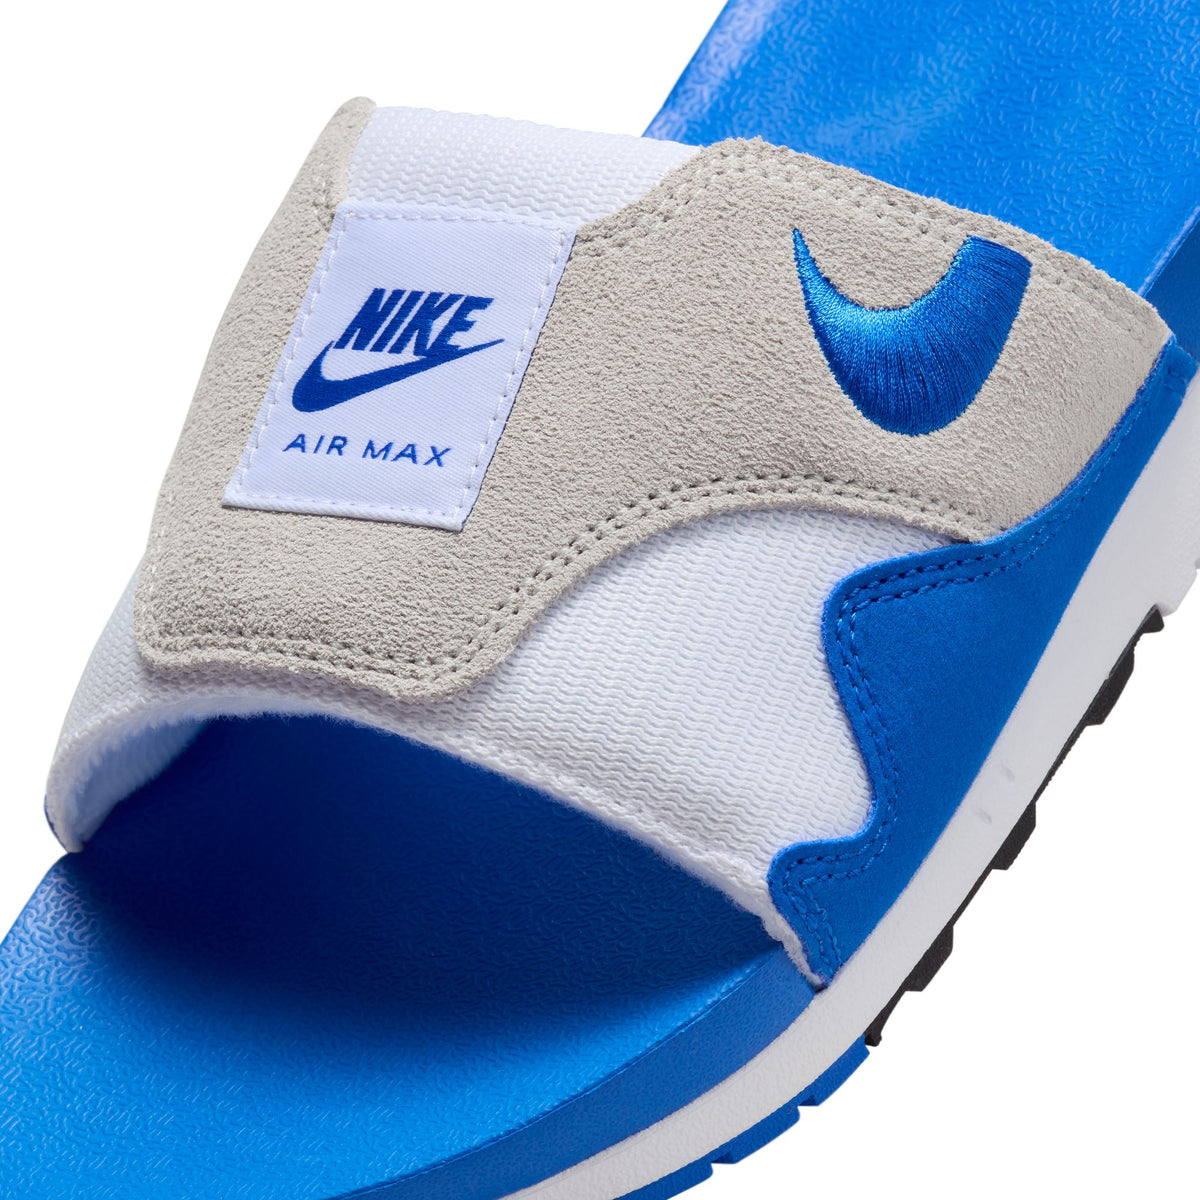 Nike Air Max 1 Slide "Royal" - Men